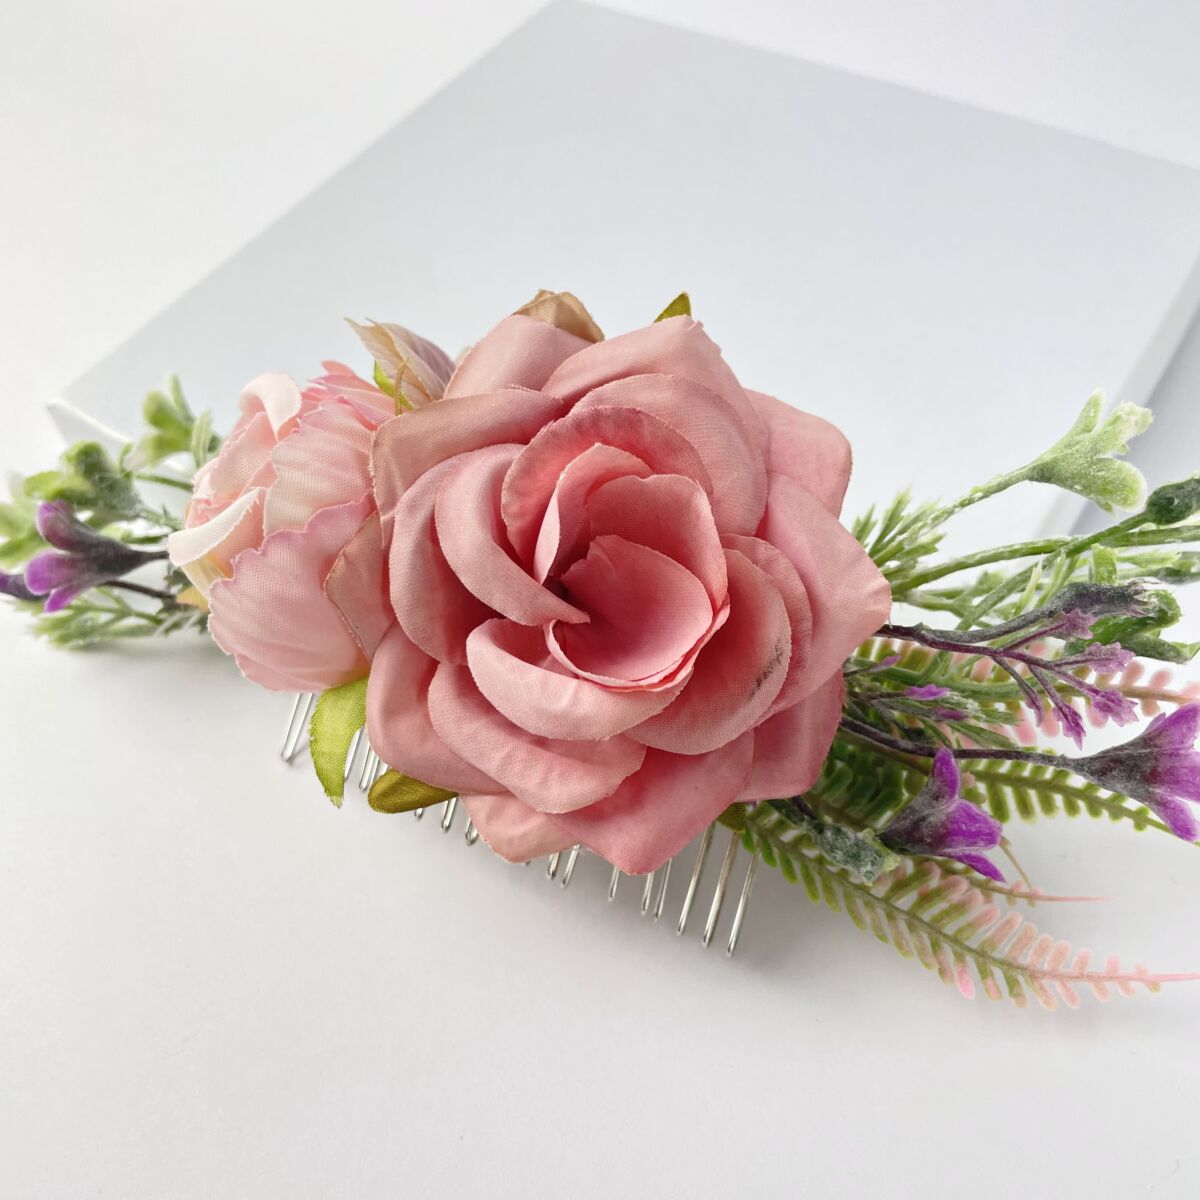 Petunia virágos esküvői hajdísz